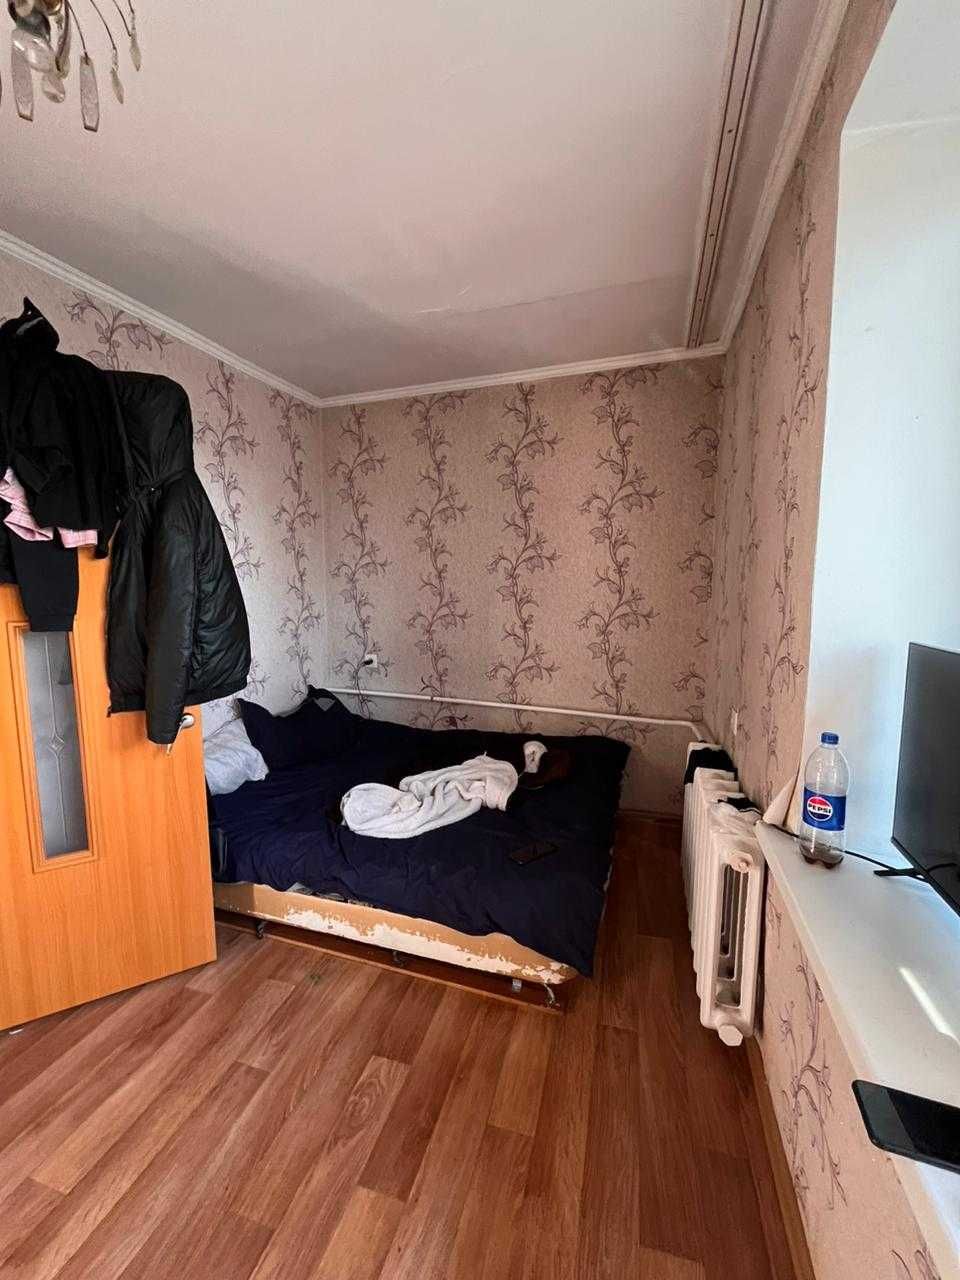 Продается 2-х комнатная квартира Ескельдинский р-н